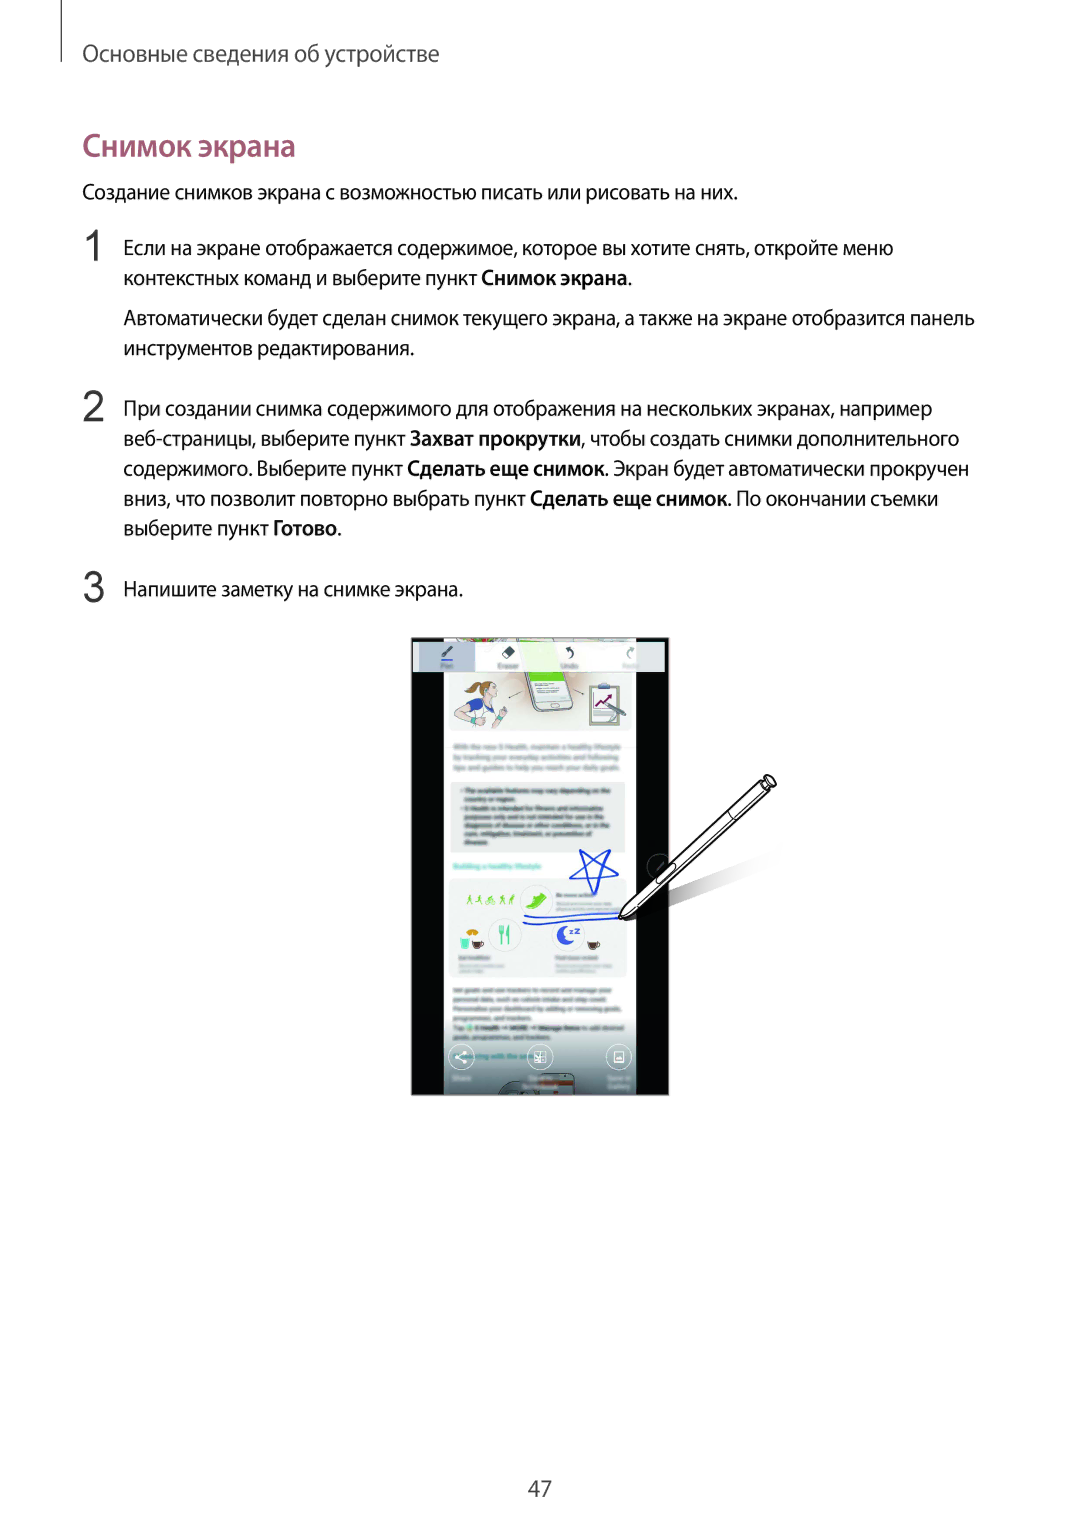 Samsung SM-N920CEDESER, SM-N920CZKESER, SM-N920CZDESER manual Снимок экрана 